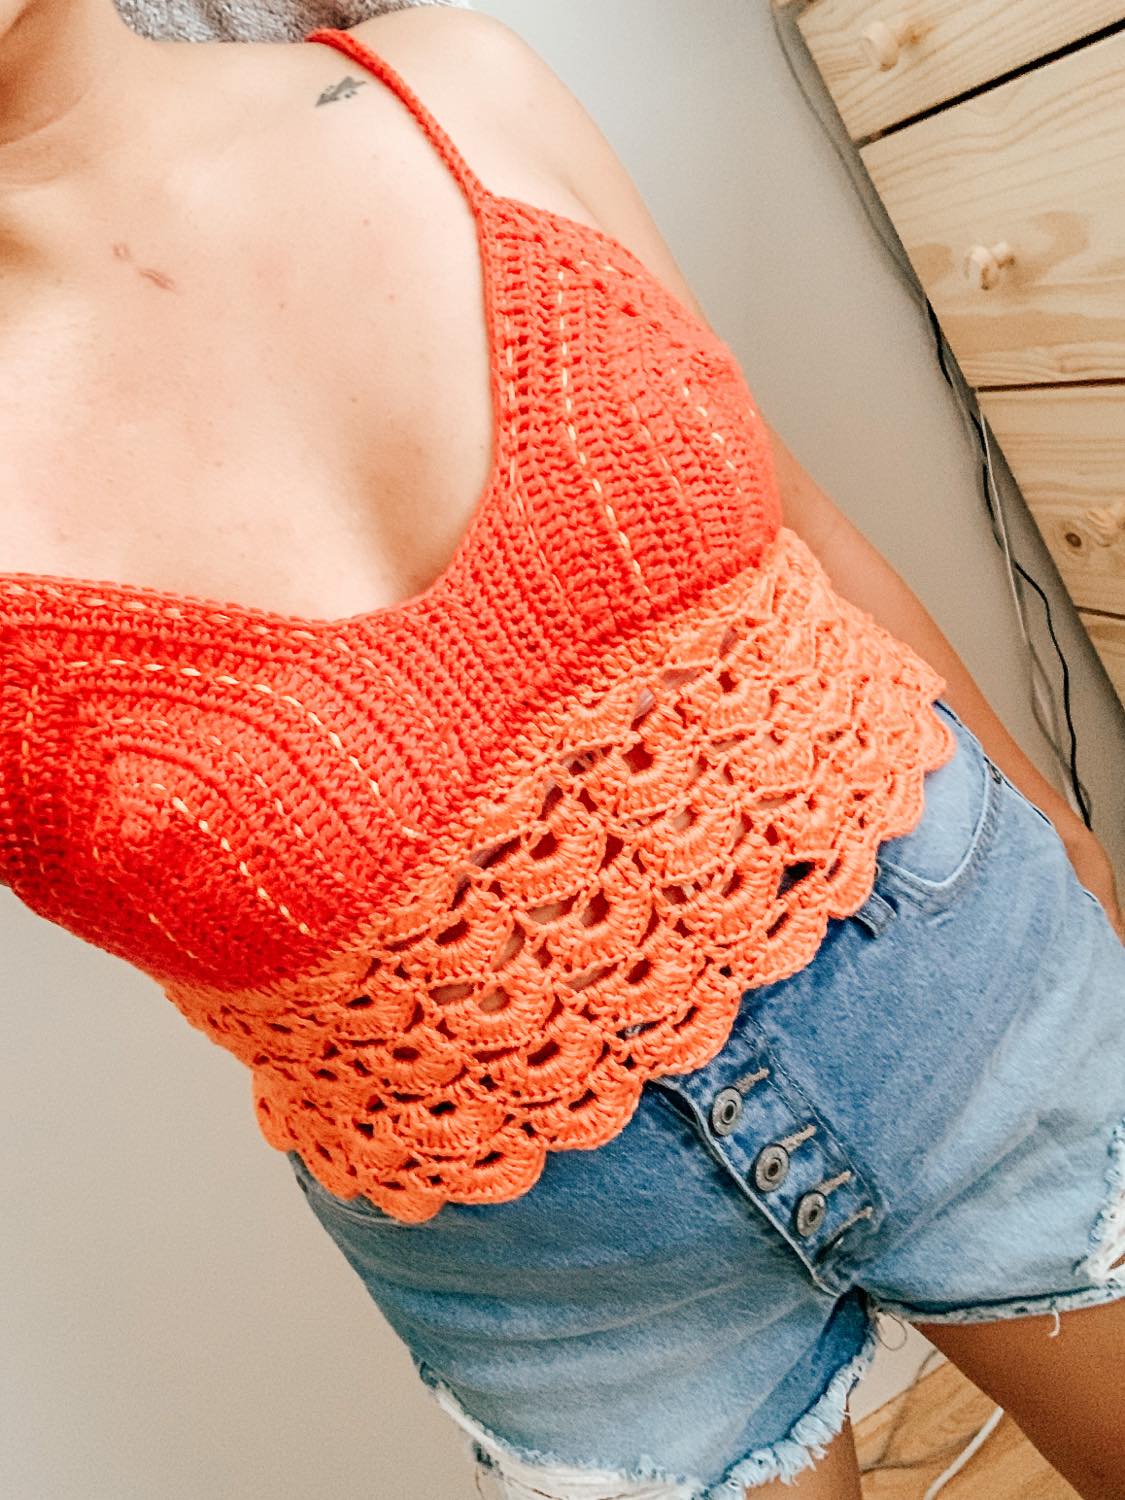 Crochet Bralette - How to m the Sunrise Crochet Bralette (free pattern)